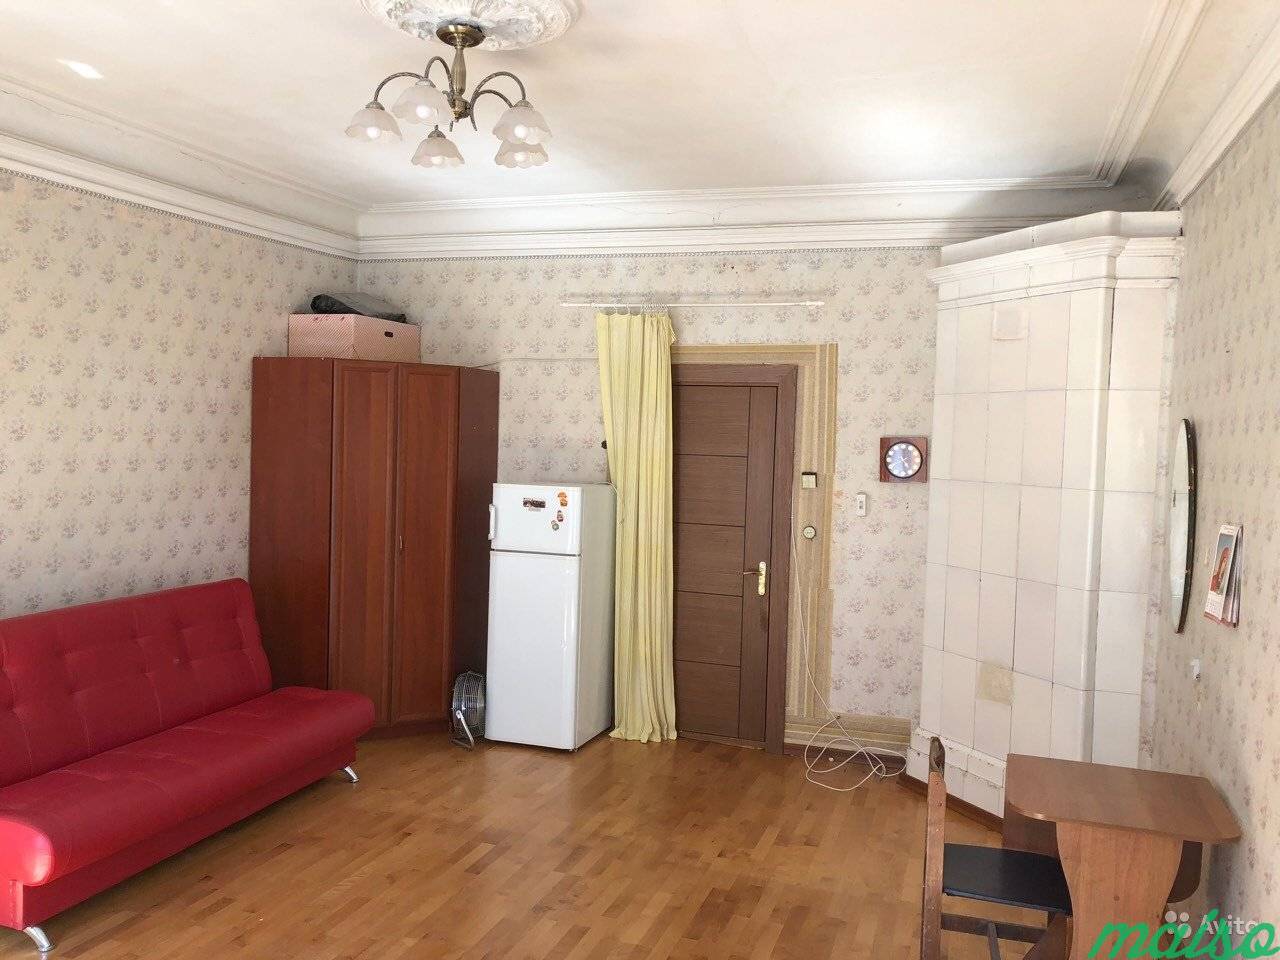 Купить комнату в спб московская. Комната в коммунальной квартире. Самую дешевую комнату коммуналка. Недвижимость комнаты. Продается комната.